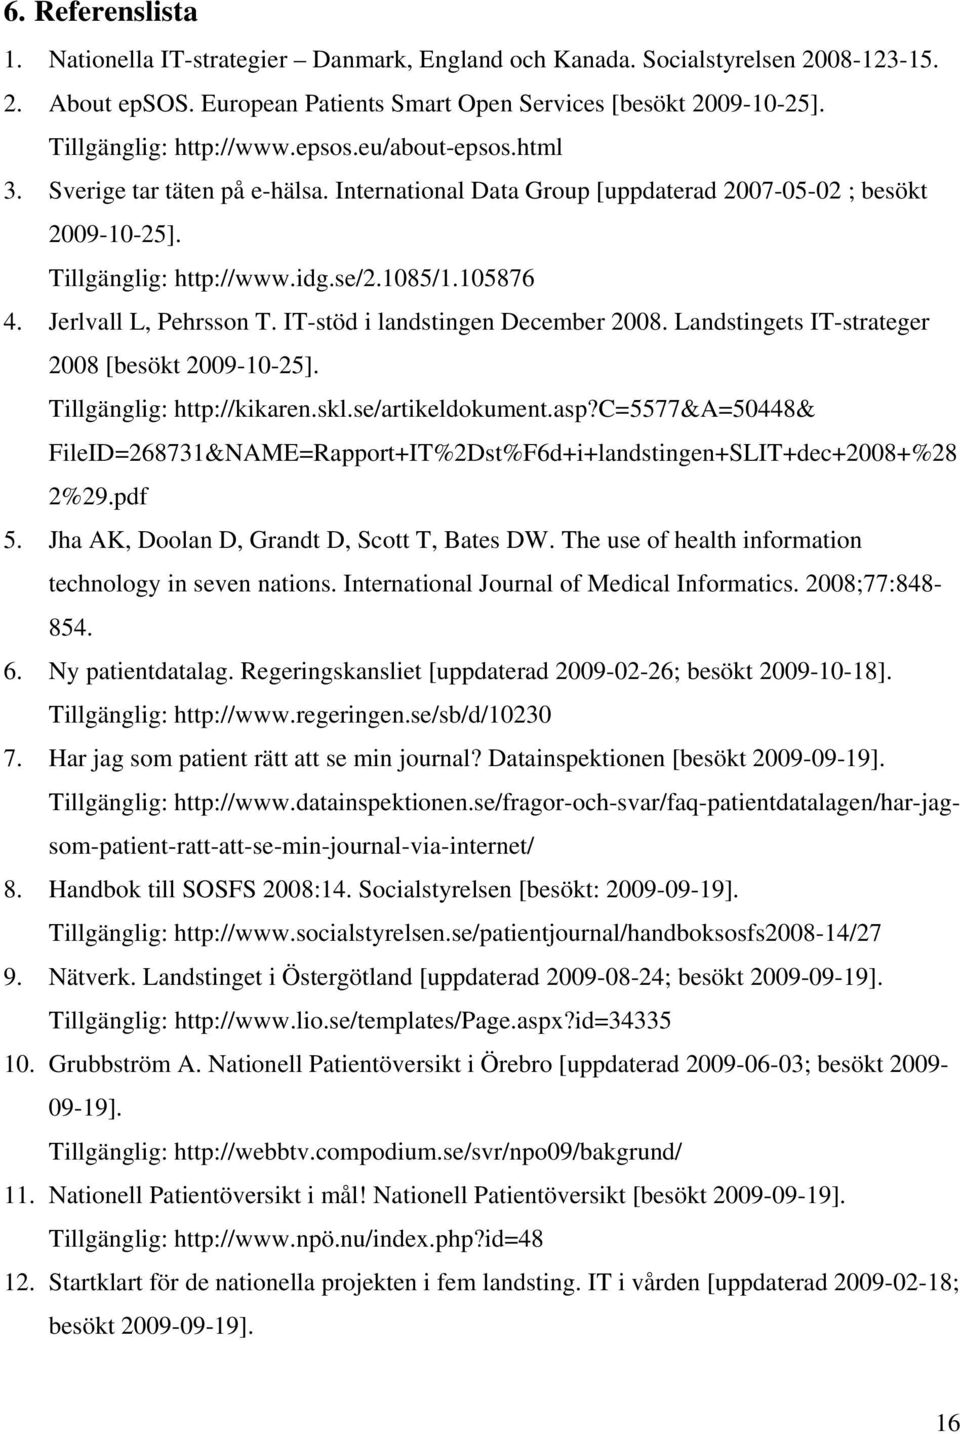 105876 4. Jerlvall L, Pehrsson T. IT-stöd i landstingen December 2008. Landstingets IT-strateger 2008 [besökt 2009-10-25]. Tillgänglig: http://kikaren.skl.se/artikeldokument.asp?